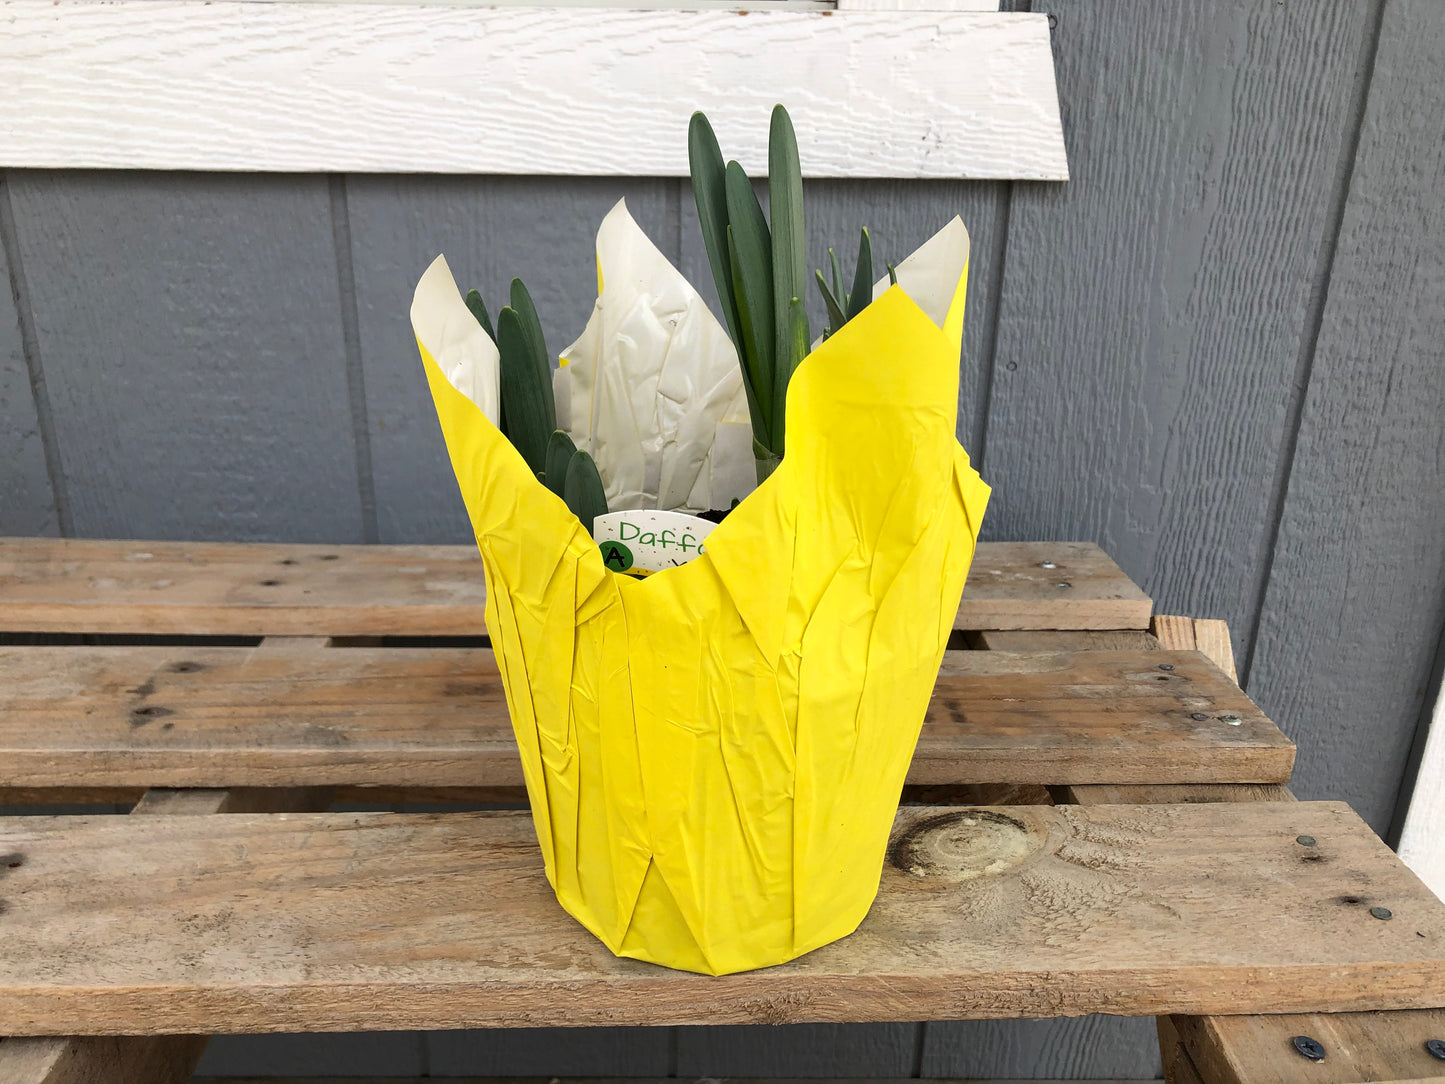 6” Daffodil Bulbs